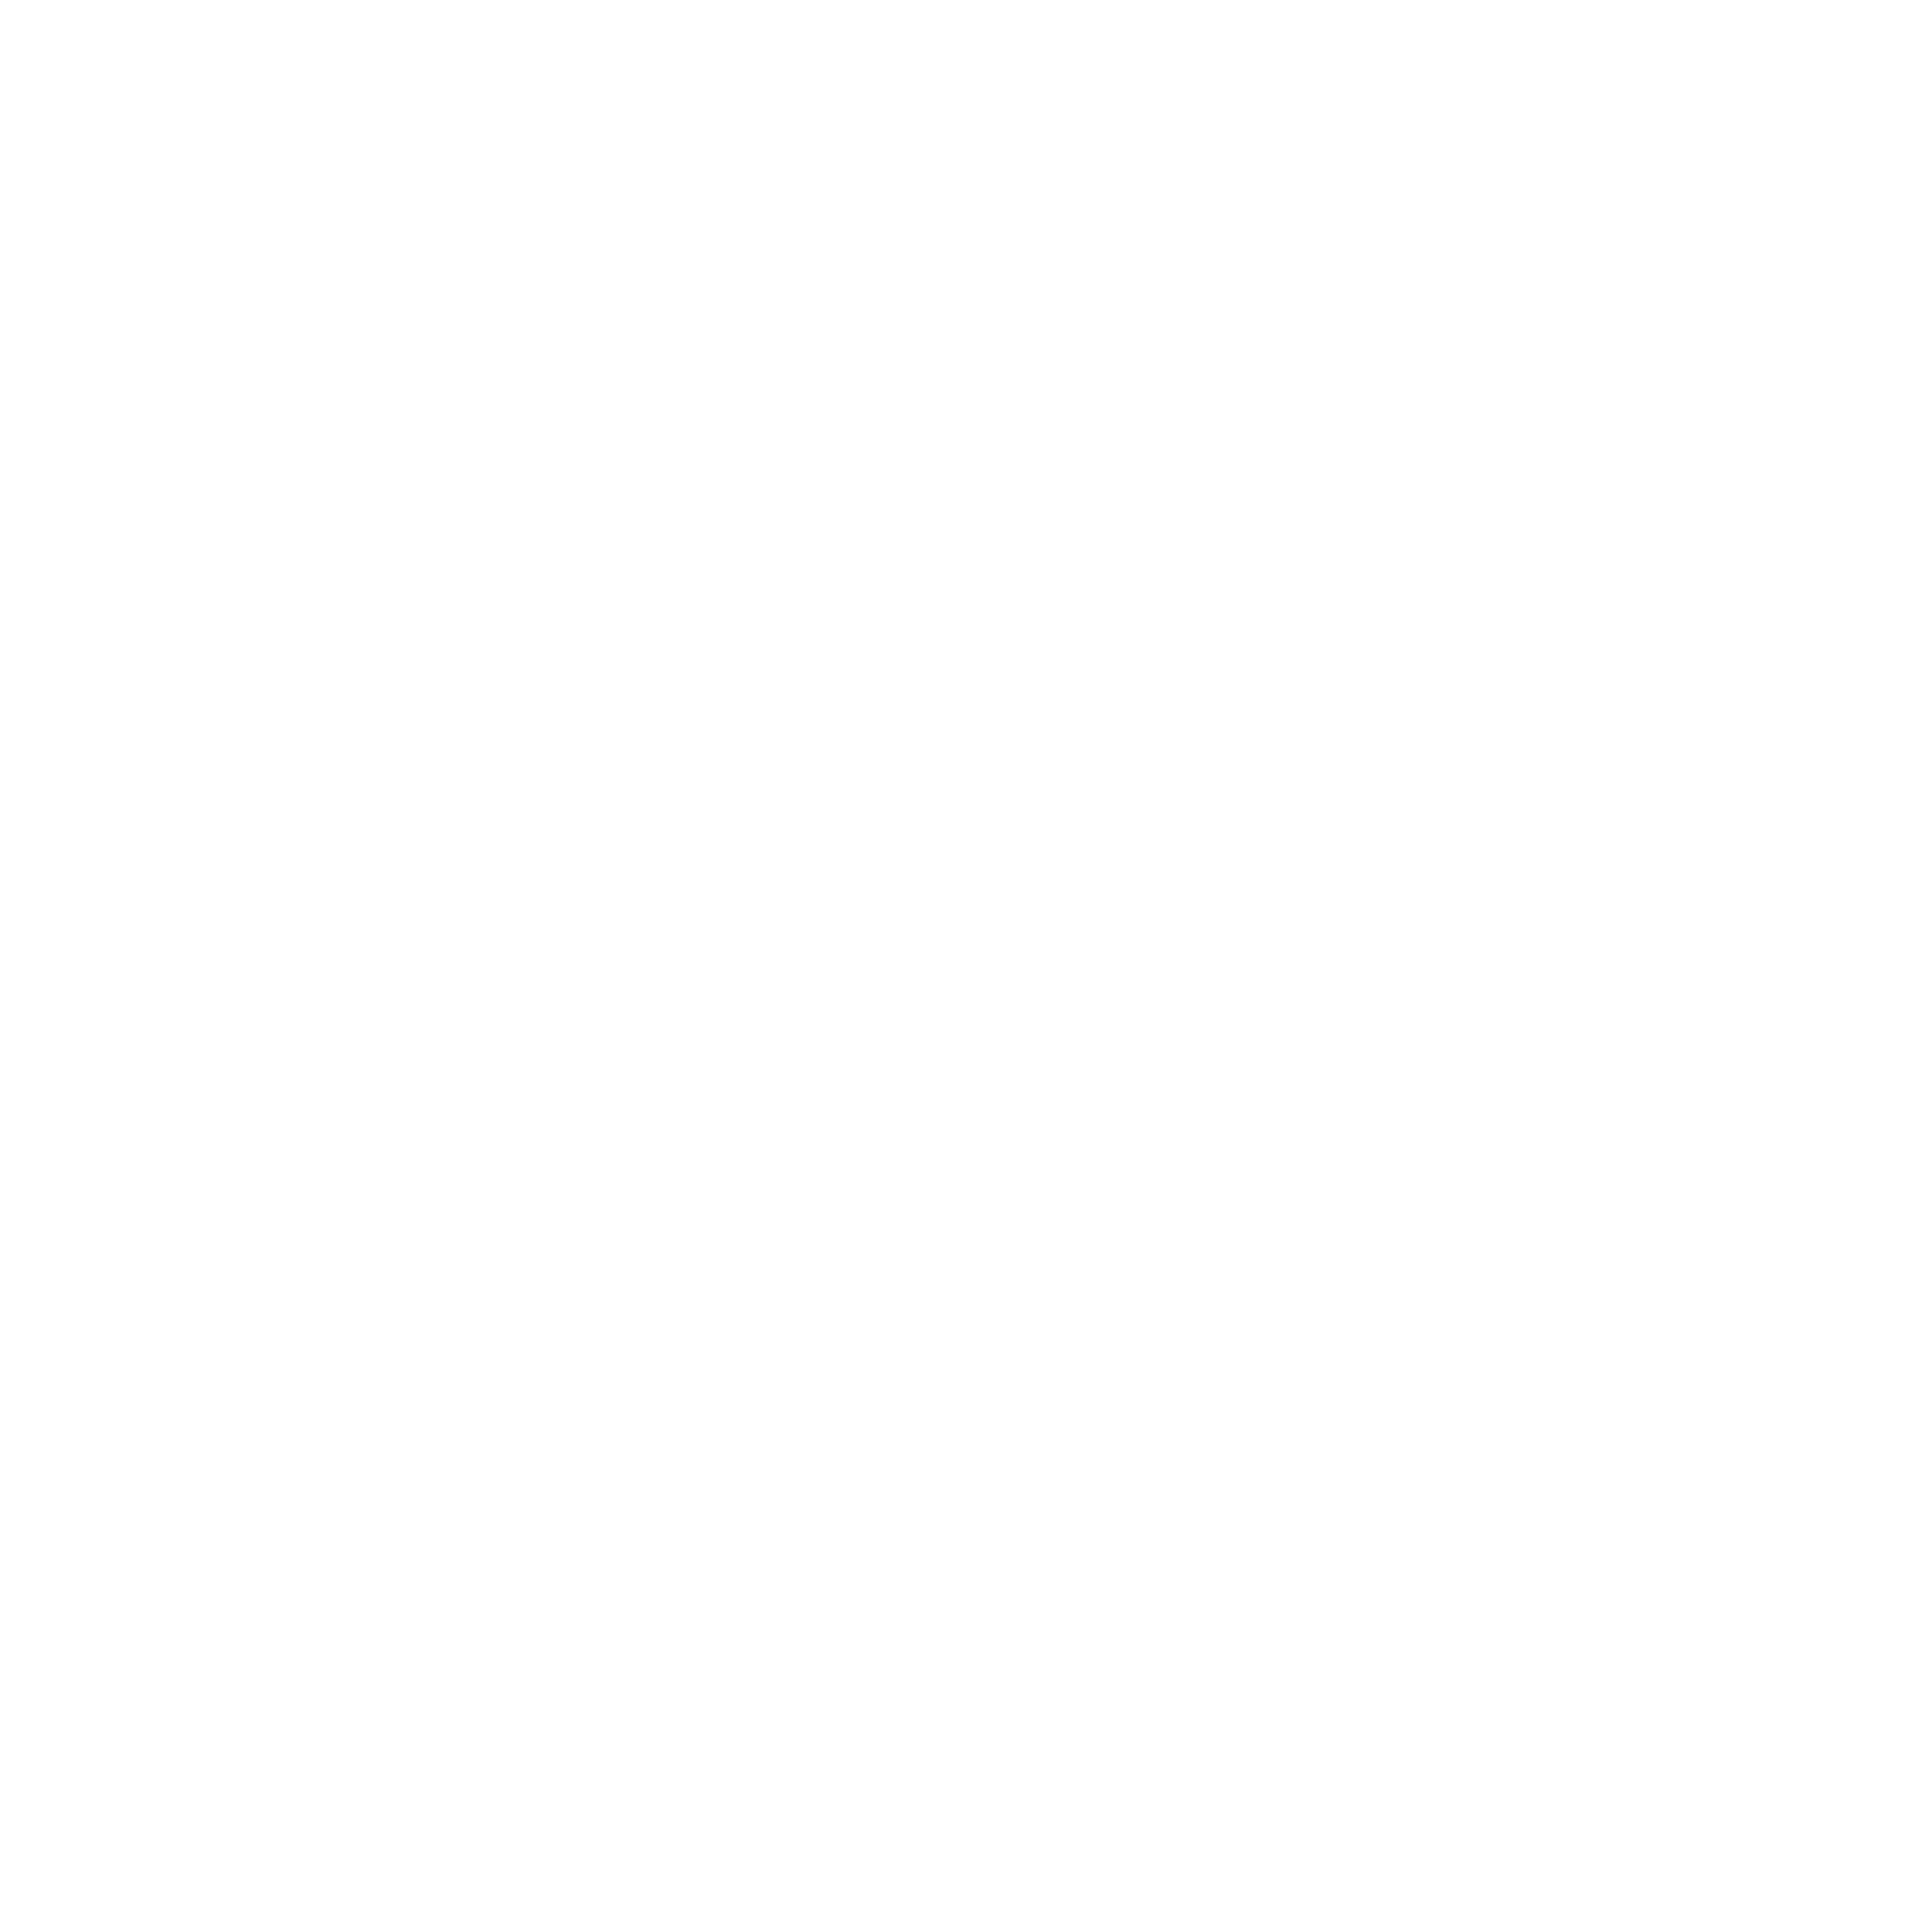 Luna Lucente